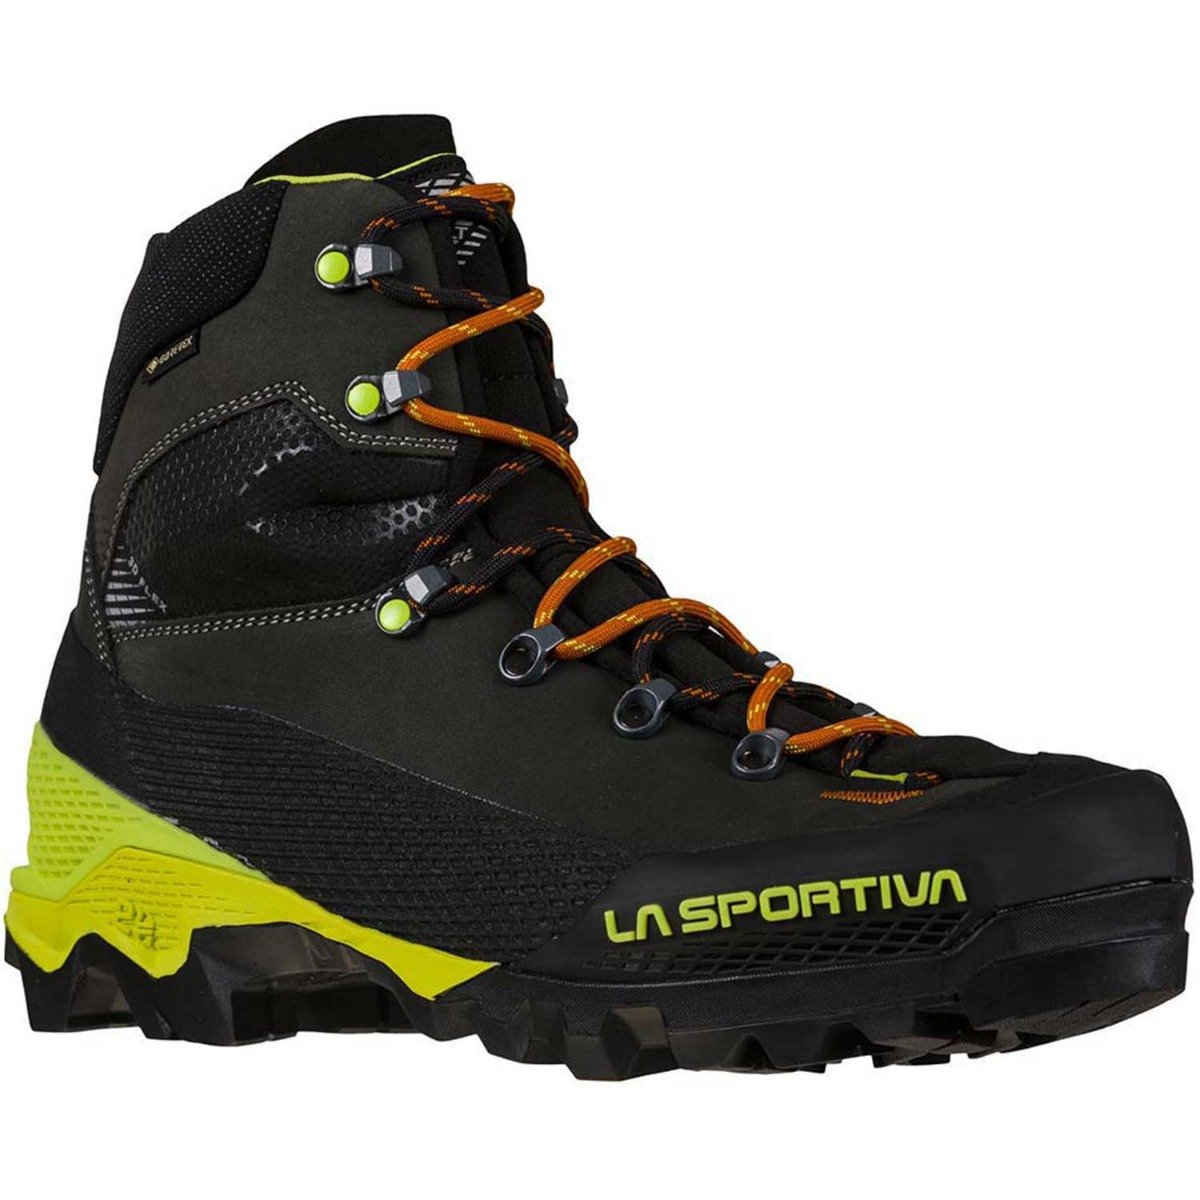 La Sportiva Aequilibrium LT GTX Hiking Boots